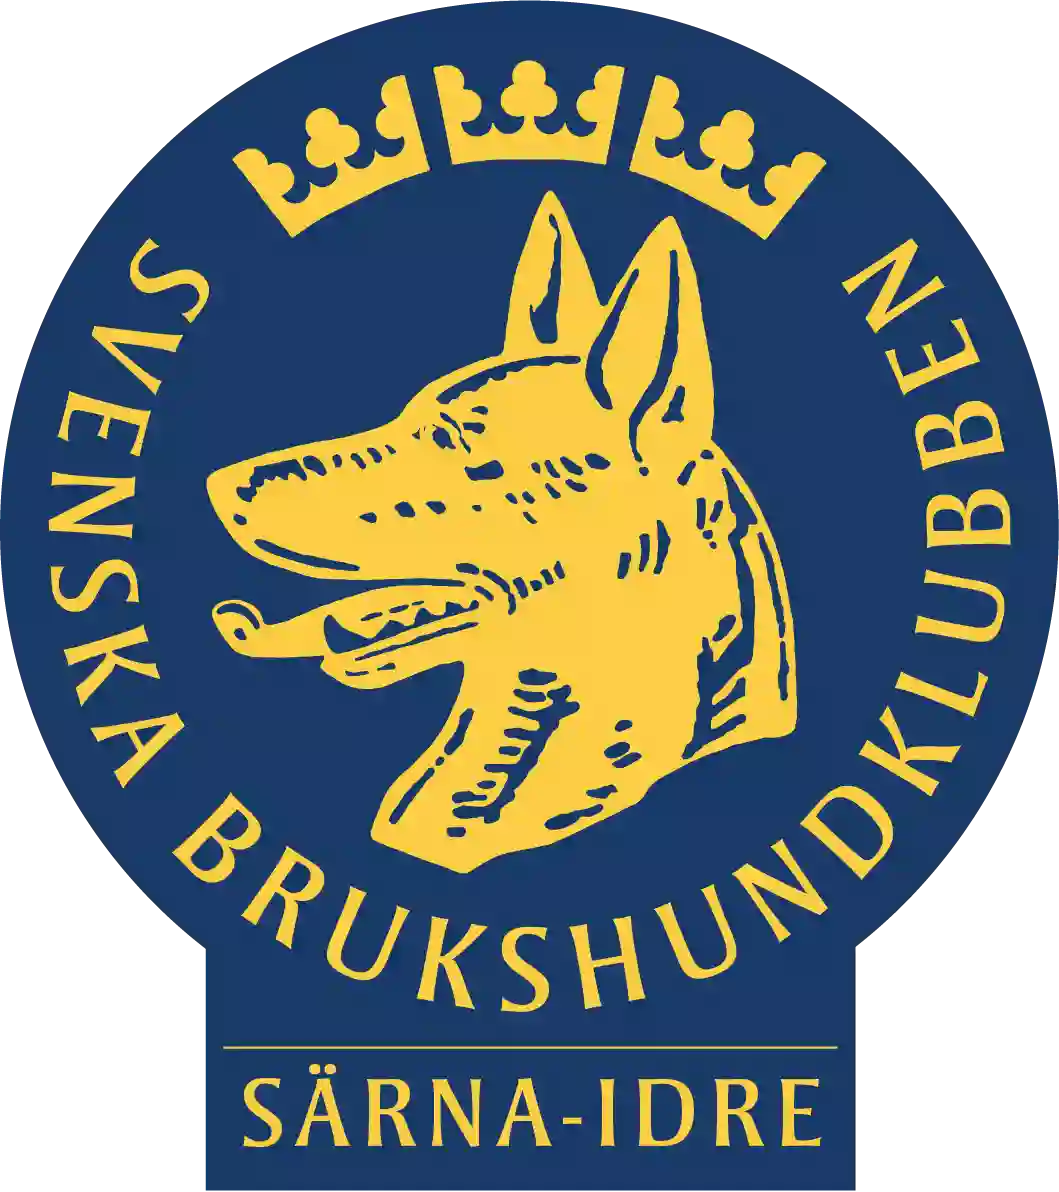 Särna-Idre Brukshundklubb